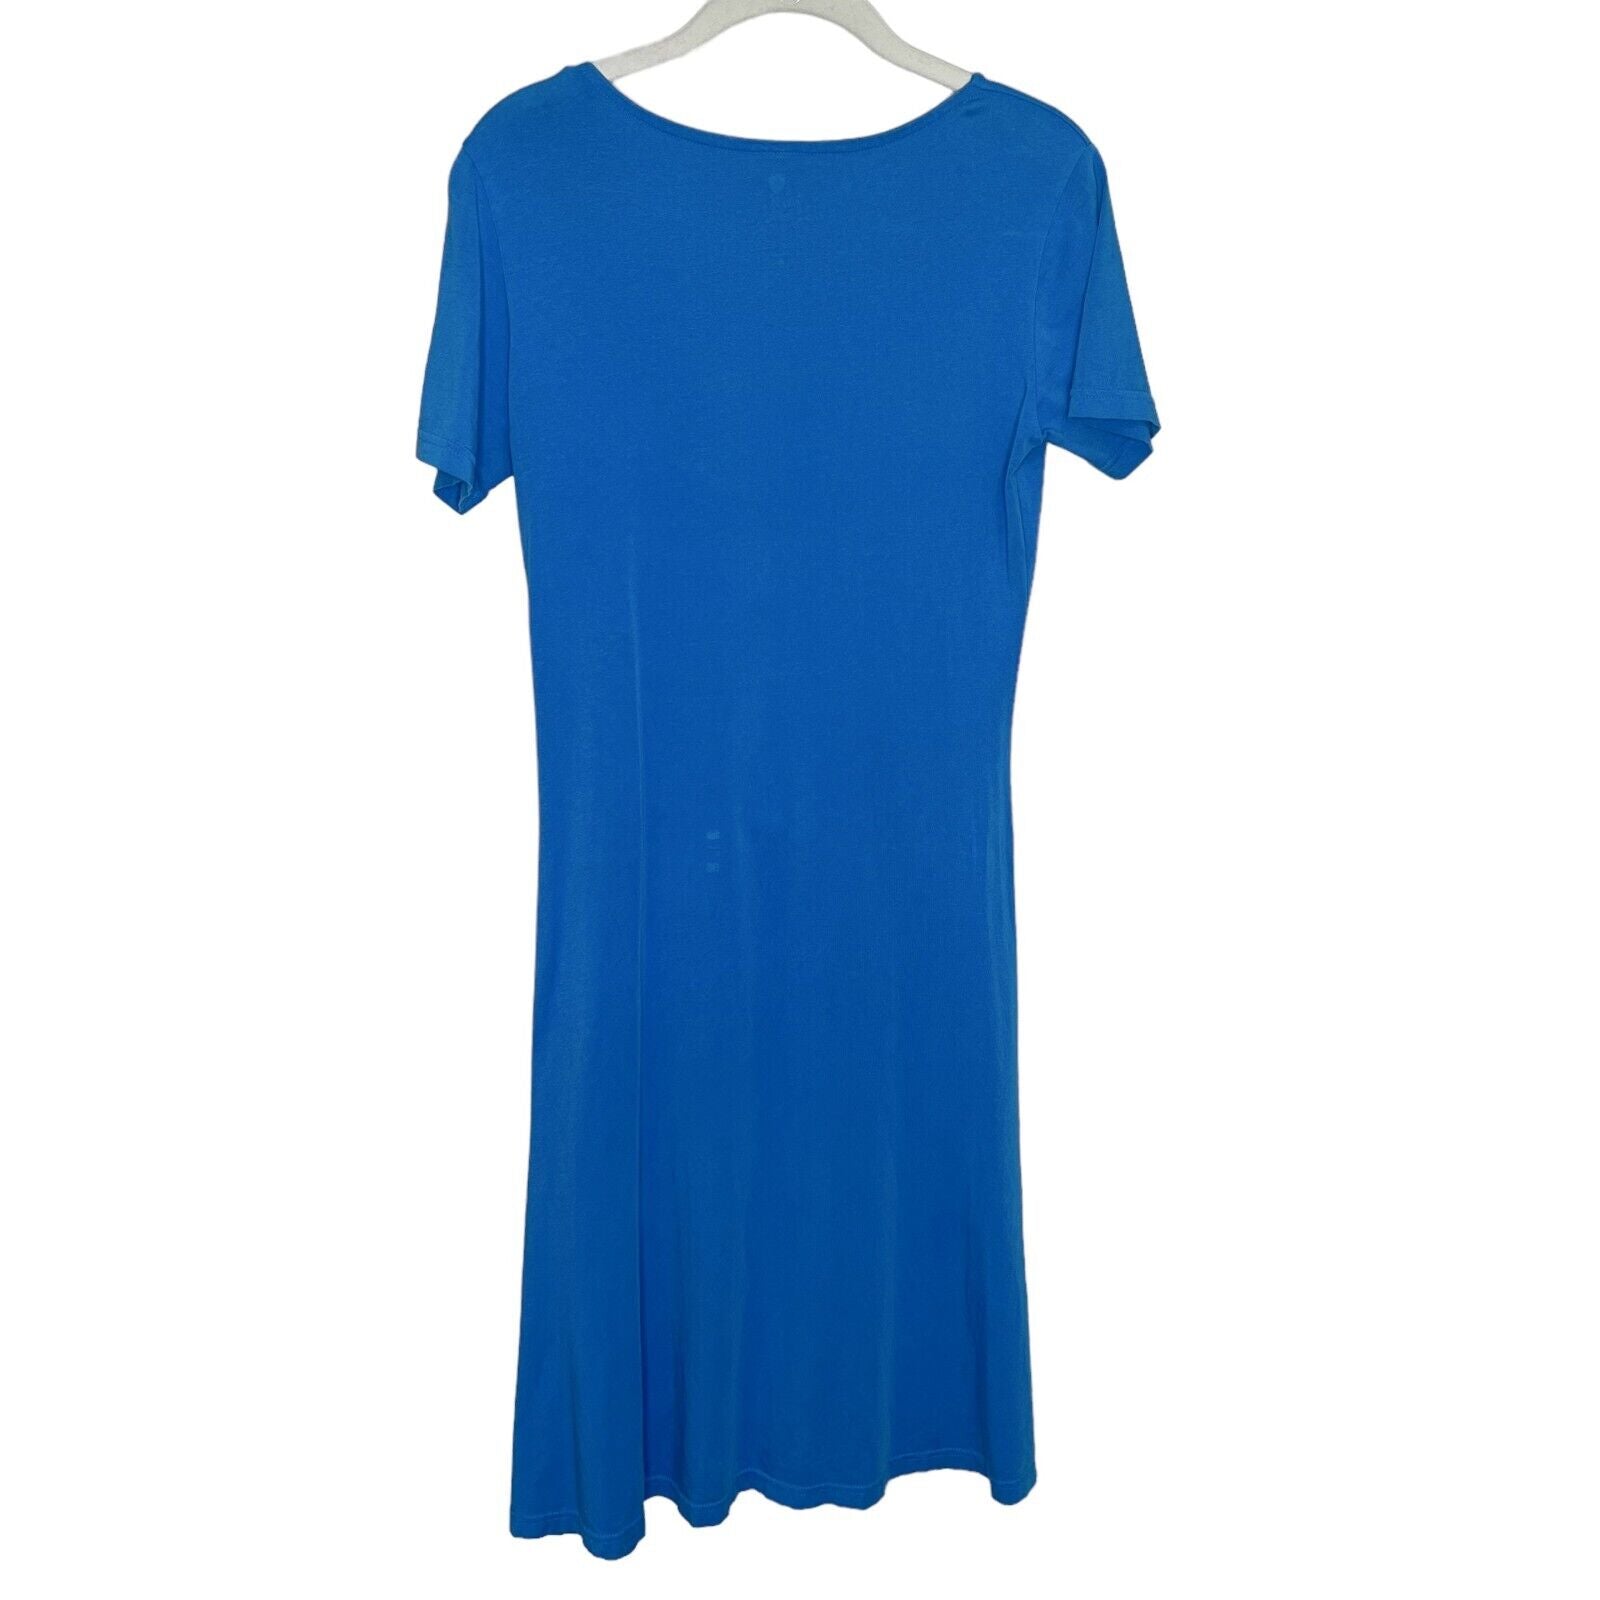 Kuhl Turquoise Short Sleeve Salza Dress Size Small